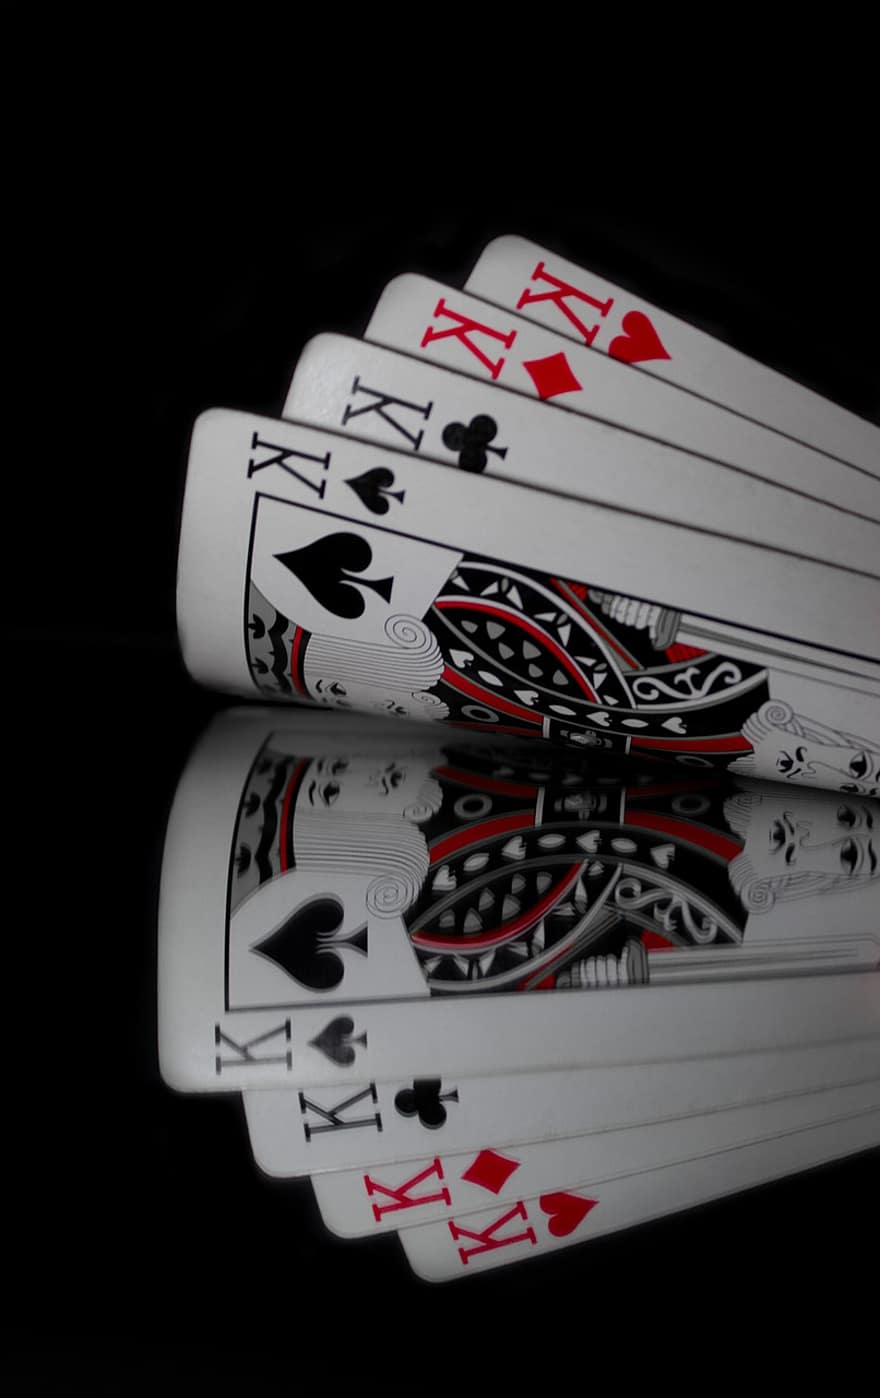 thẻ, bài bạc, sự phản chiếu, xì phé, trò chơi bài, sòng bạc, át chủ, chơi, may mắn, thuổng, sự thành công